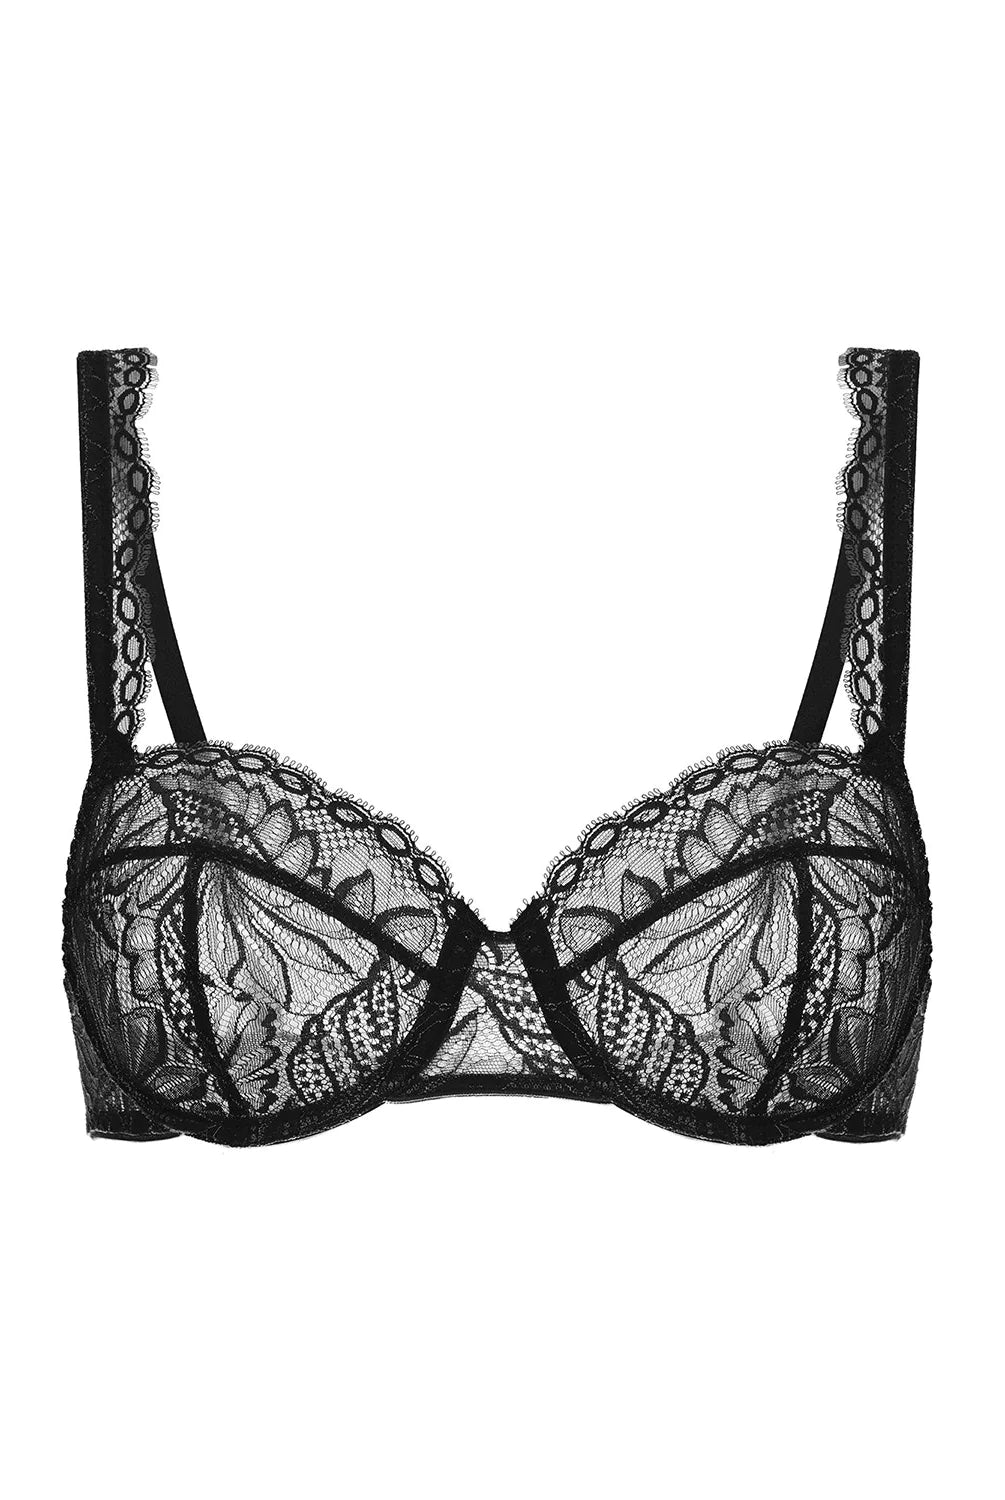 Exotica Sheer Demi Bra - Black - Flirt! Luxe Lingerie & Sleepwear